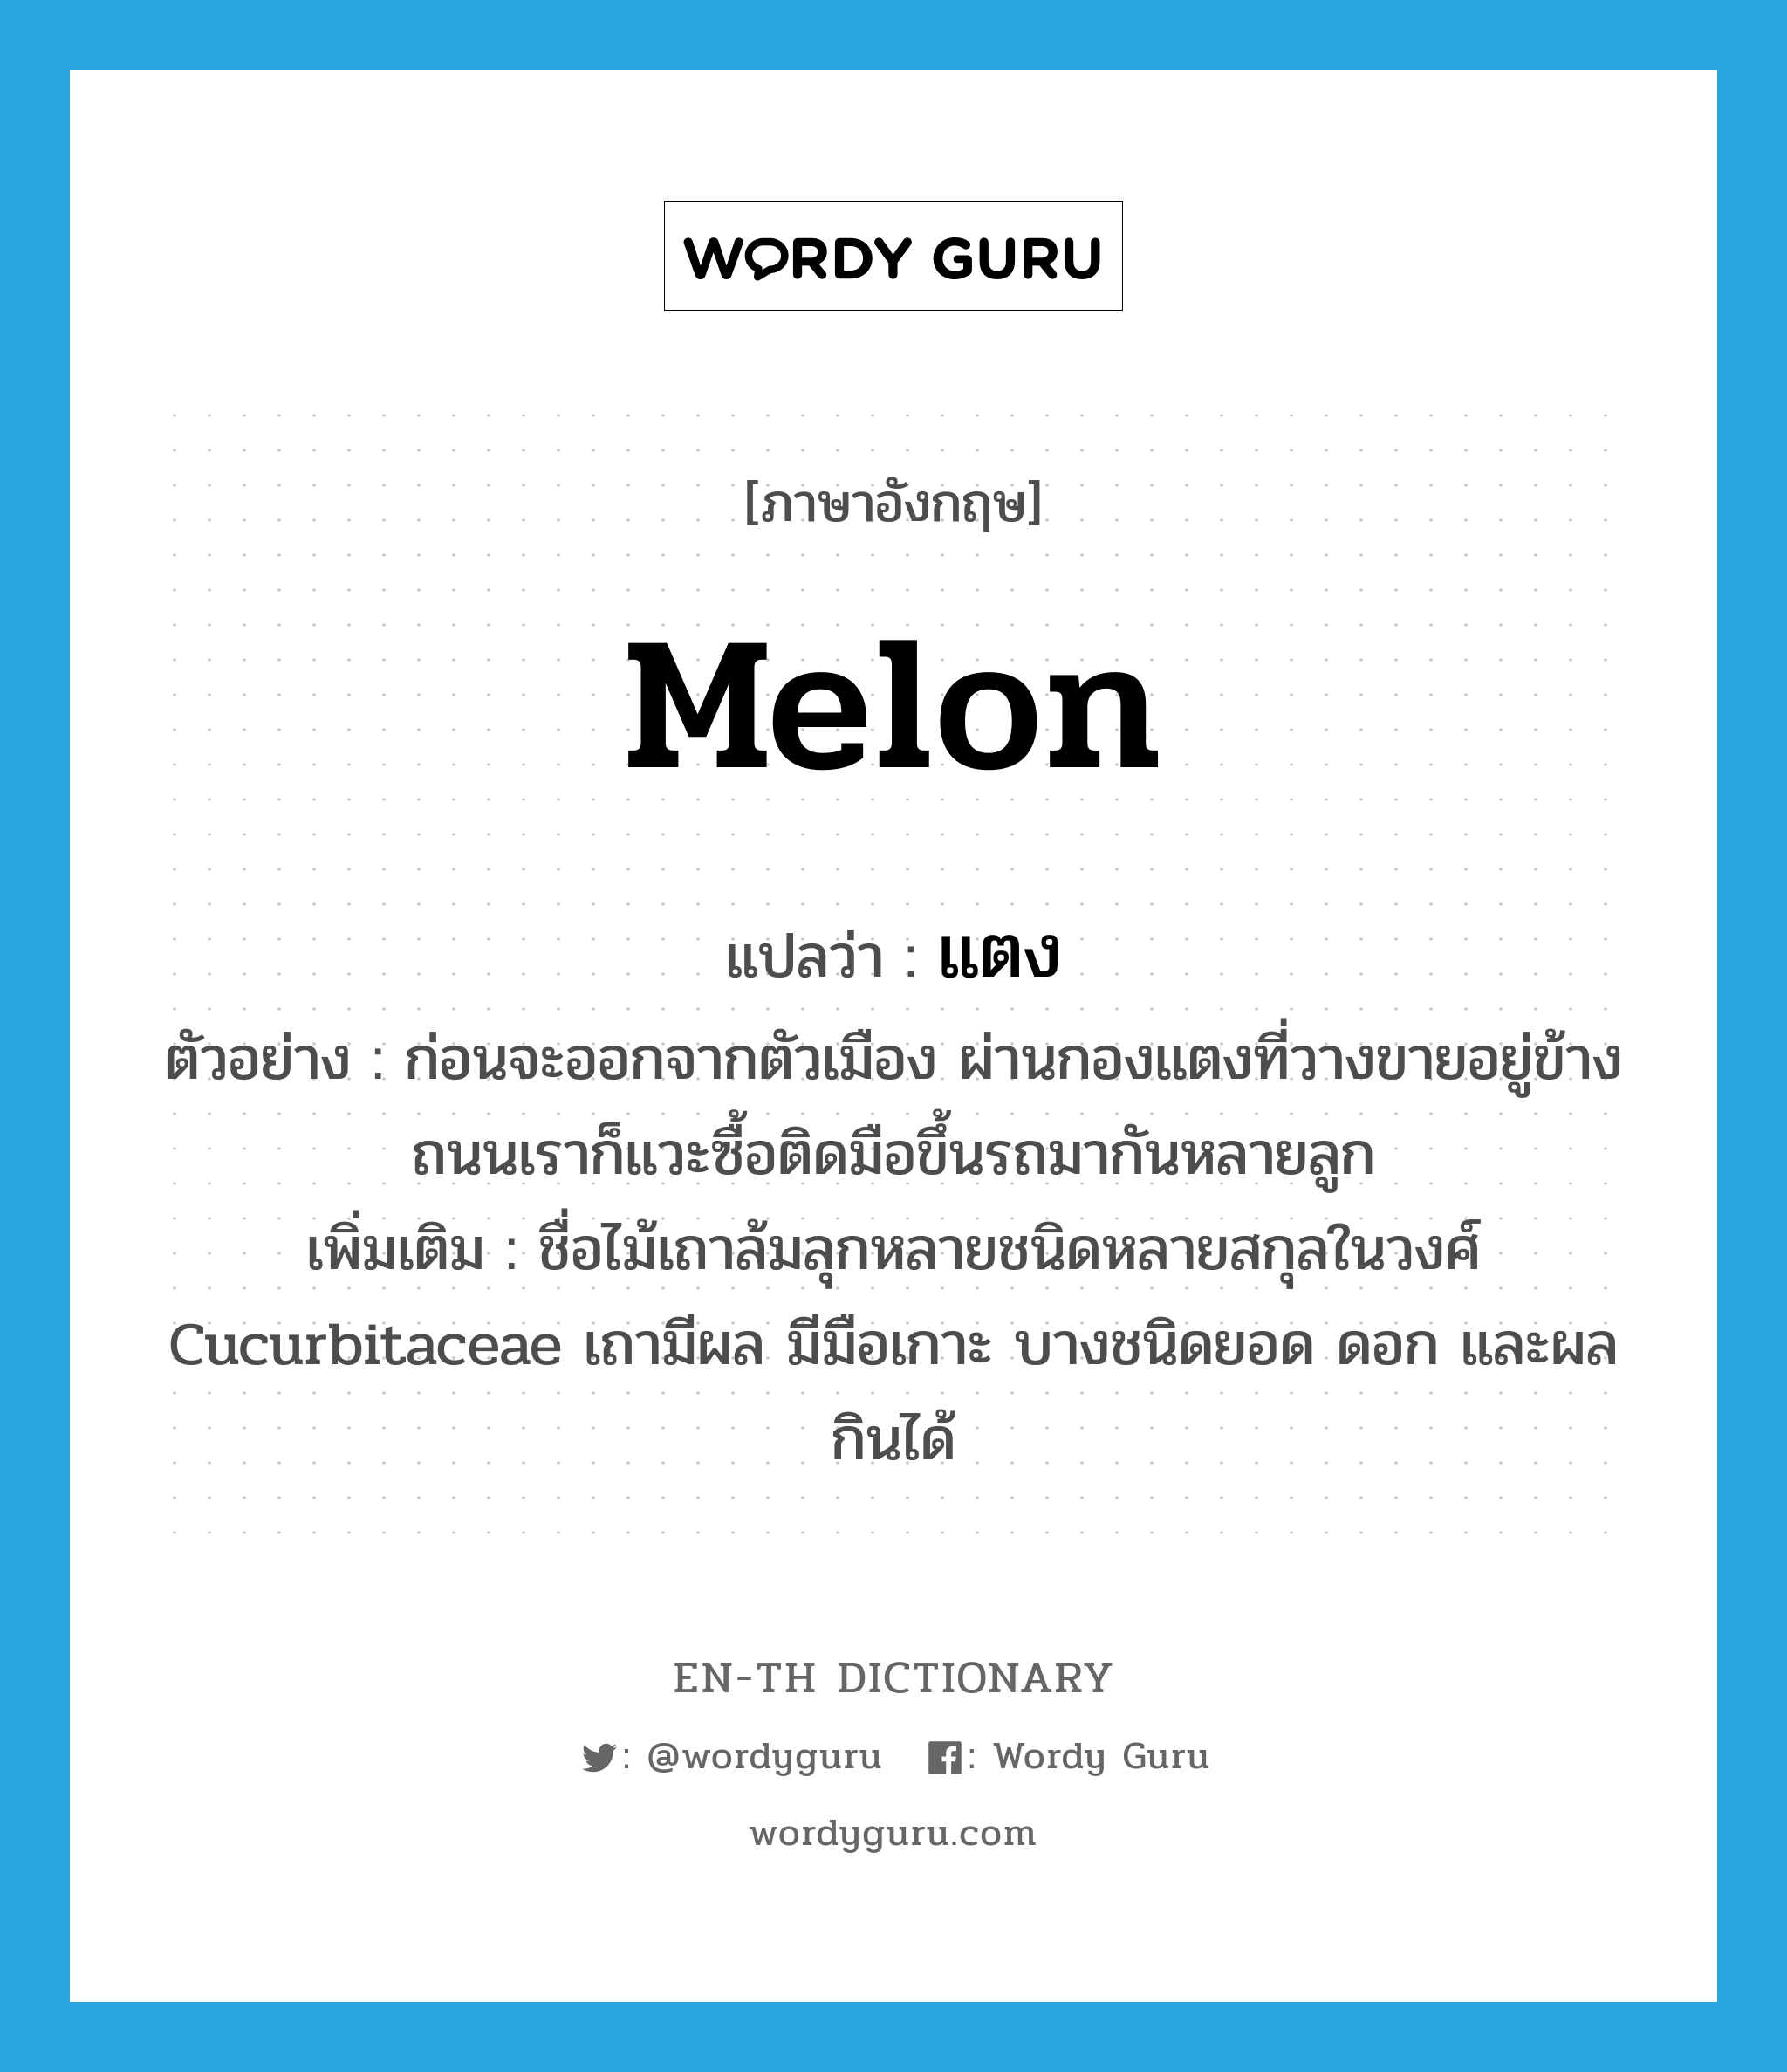 melon แปลว่า?, คำศัพท์ภาษาอังกฤษ melon แปลว่า แตง ประเภท N ตัวอย่าง ก่อนจะออกจากตัวเมือง ผ่านกองแตงที่วางขายอยู่ข้างถนนเราก็แวะซื้อติดมือขึ้นรถมากันหลายลูก เพิ่มเติม ชื่อไม้เถาล้มลุกหลายชนิดหลายสกุลในวงศ์ Cucurbitaceae เถามีผล มีมือเกาะ บางชนิดยอด ดอก และผลกินได้ หมวด N